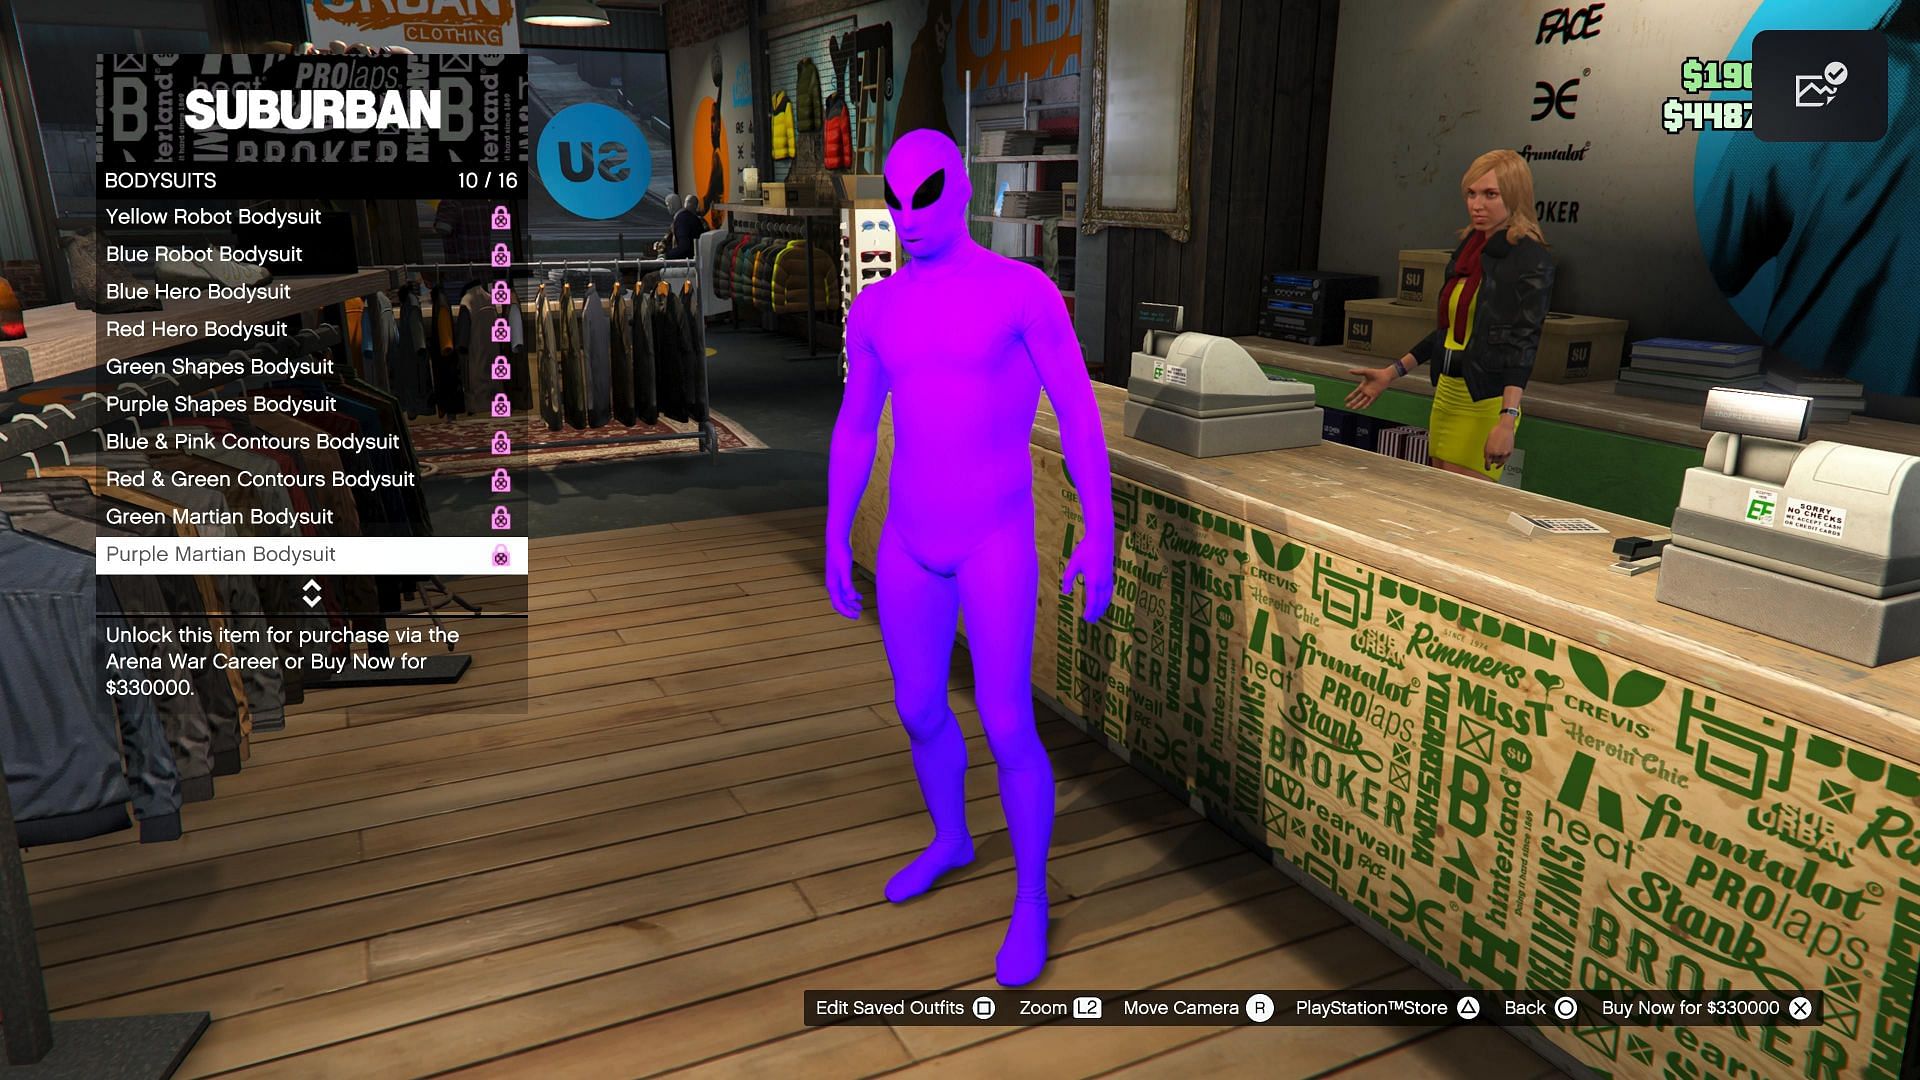 The purple suit is called Purple Martian Bodysuit (Image via Rockstar Games)